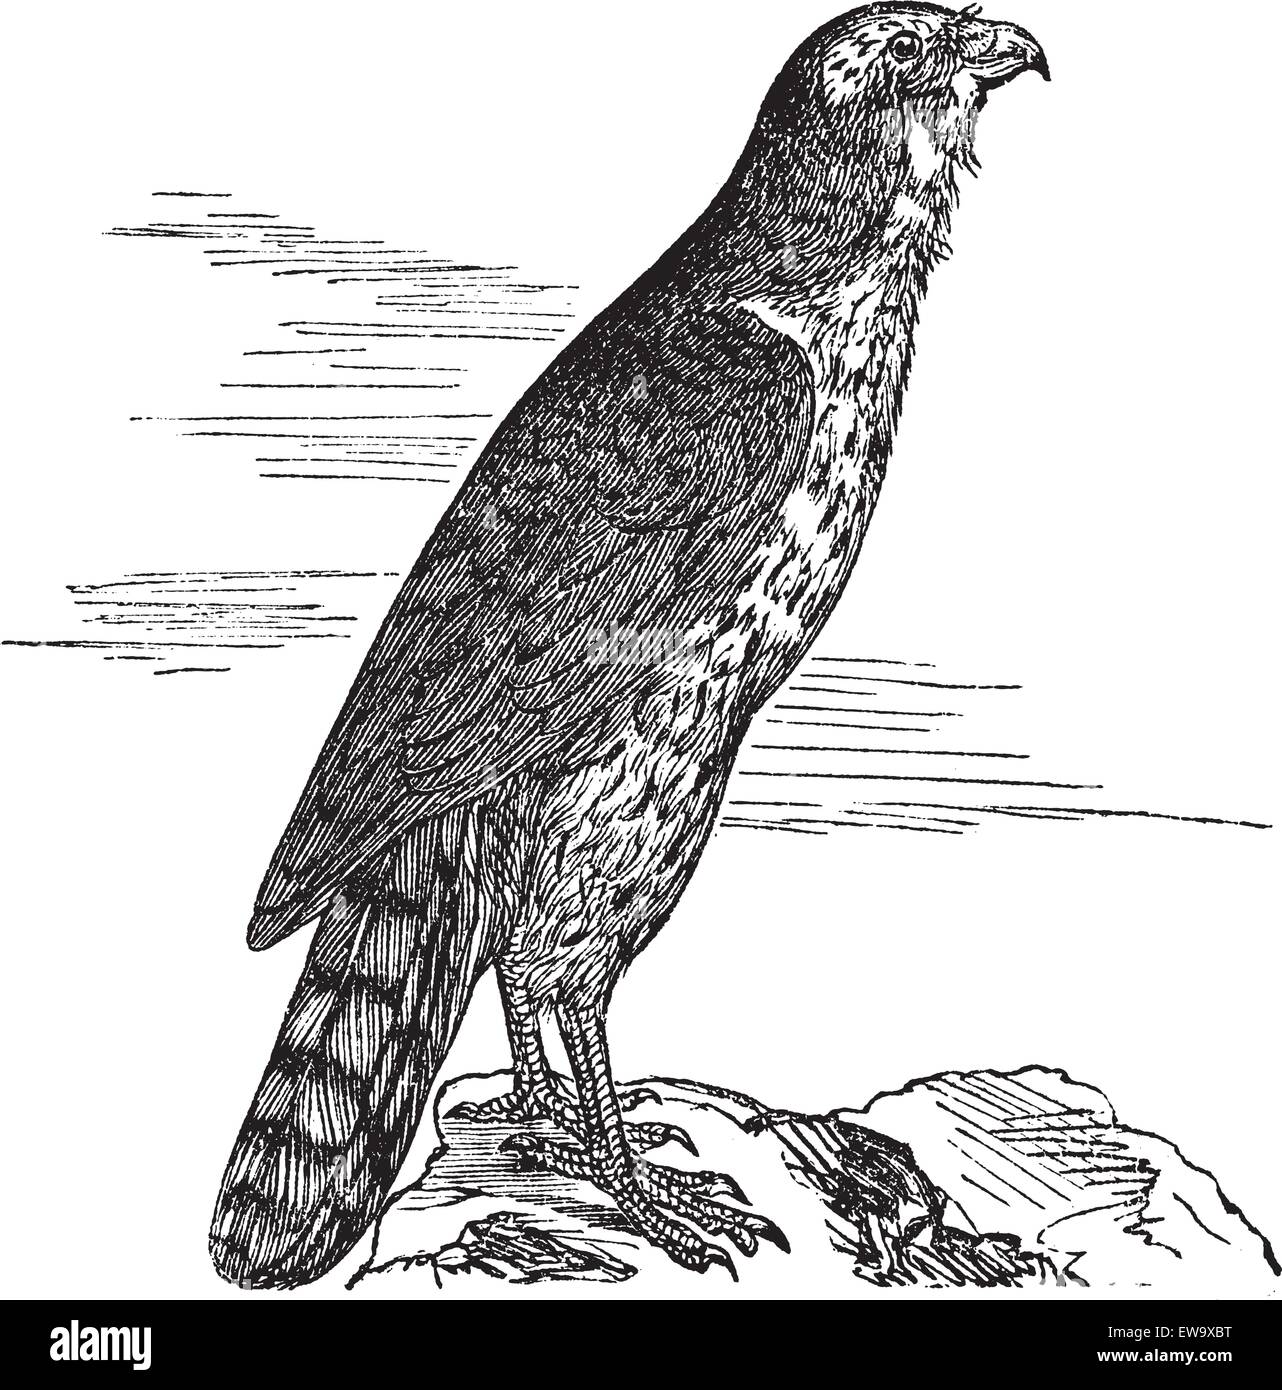 Le Goshawk, rond, faucon, kestrel, Accipitridae ou Accipiter gentilis. Gravure vintage. Ancienne illustration gravée d'un palomon du Nord trouvé la plupart du temps au Maroc. Illustration de Vecteur